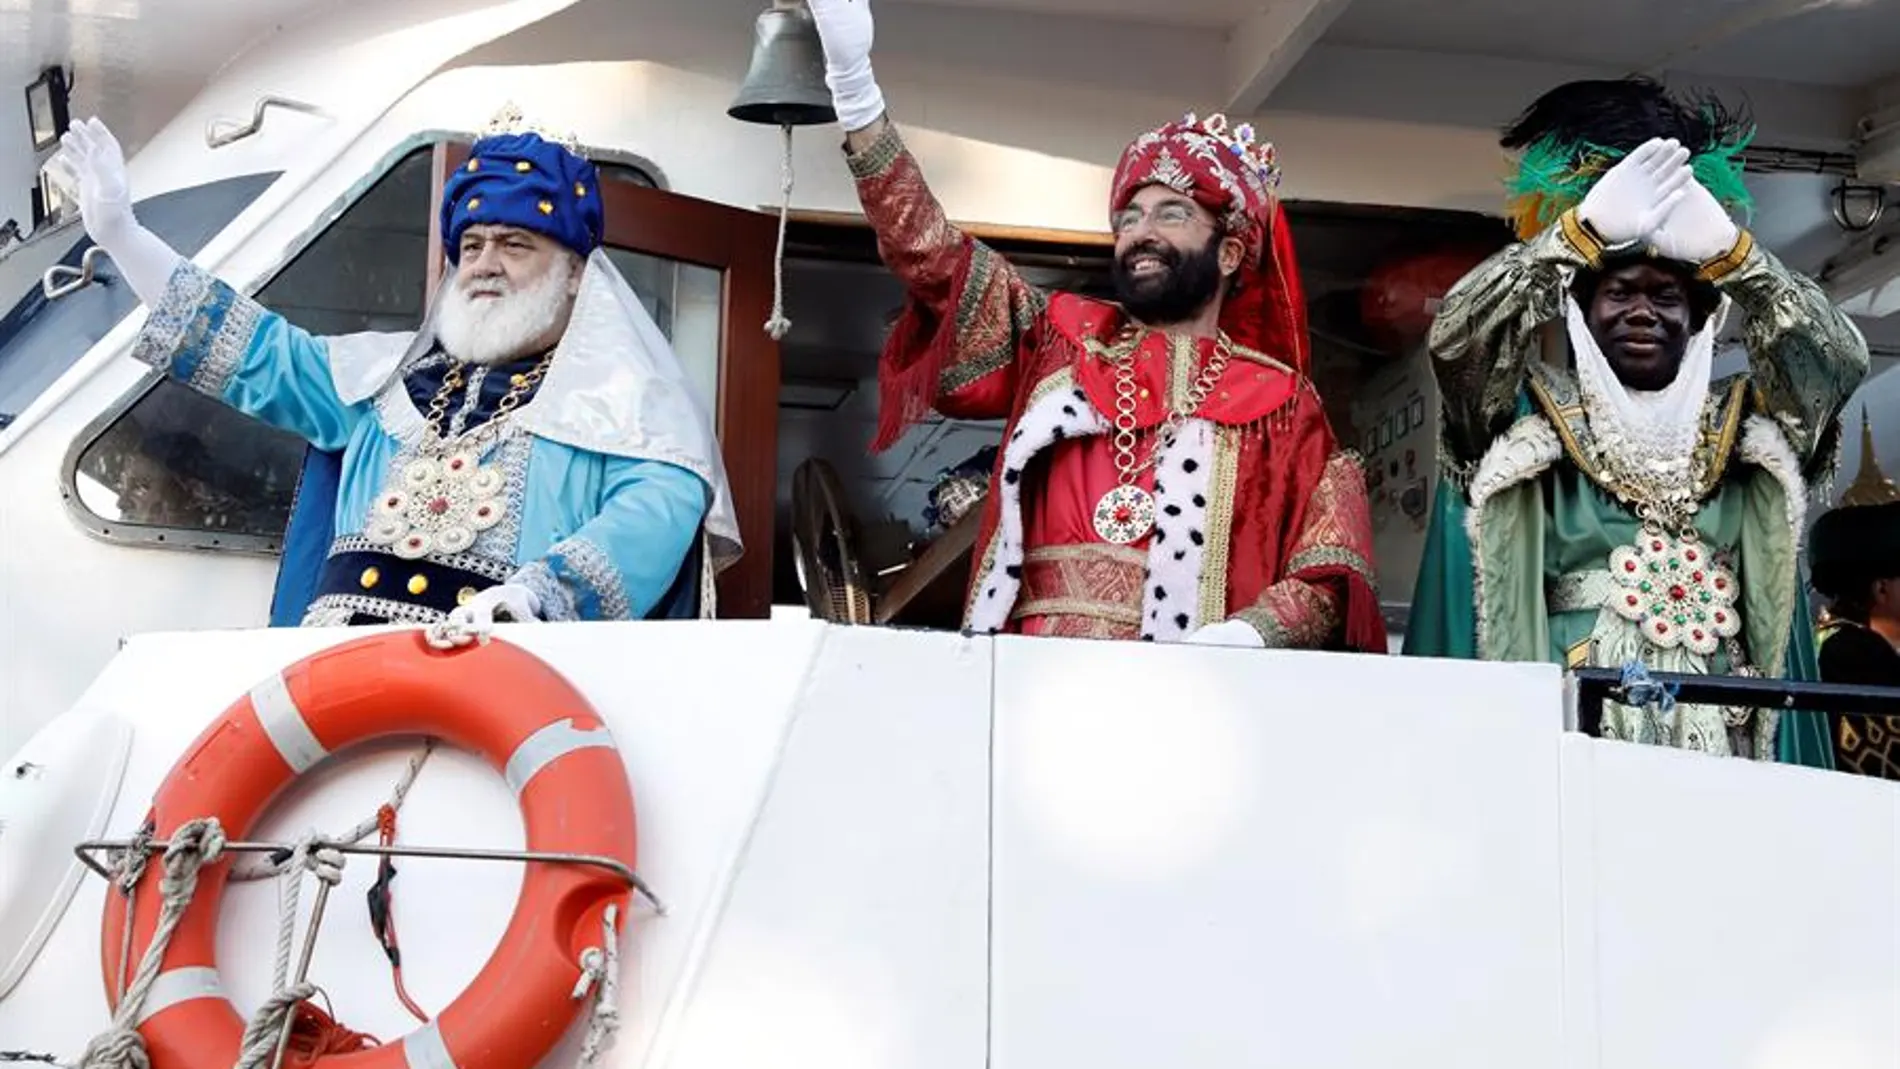 Los tres Reyes Magos, Melchor, Gaspar y Baltasar a su llega en barco al puerto de Valencia desde donde iniciarán la tradicional cabalgata por la ciudad